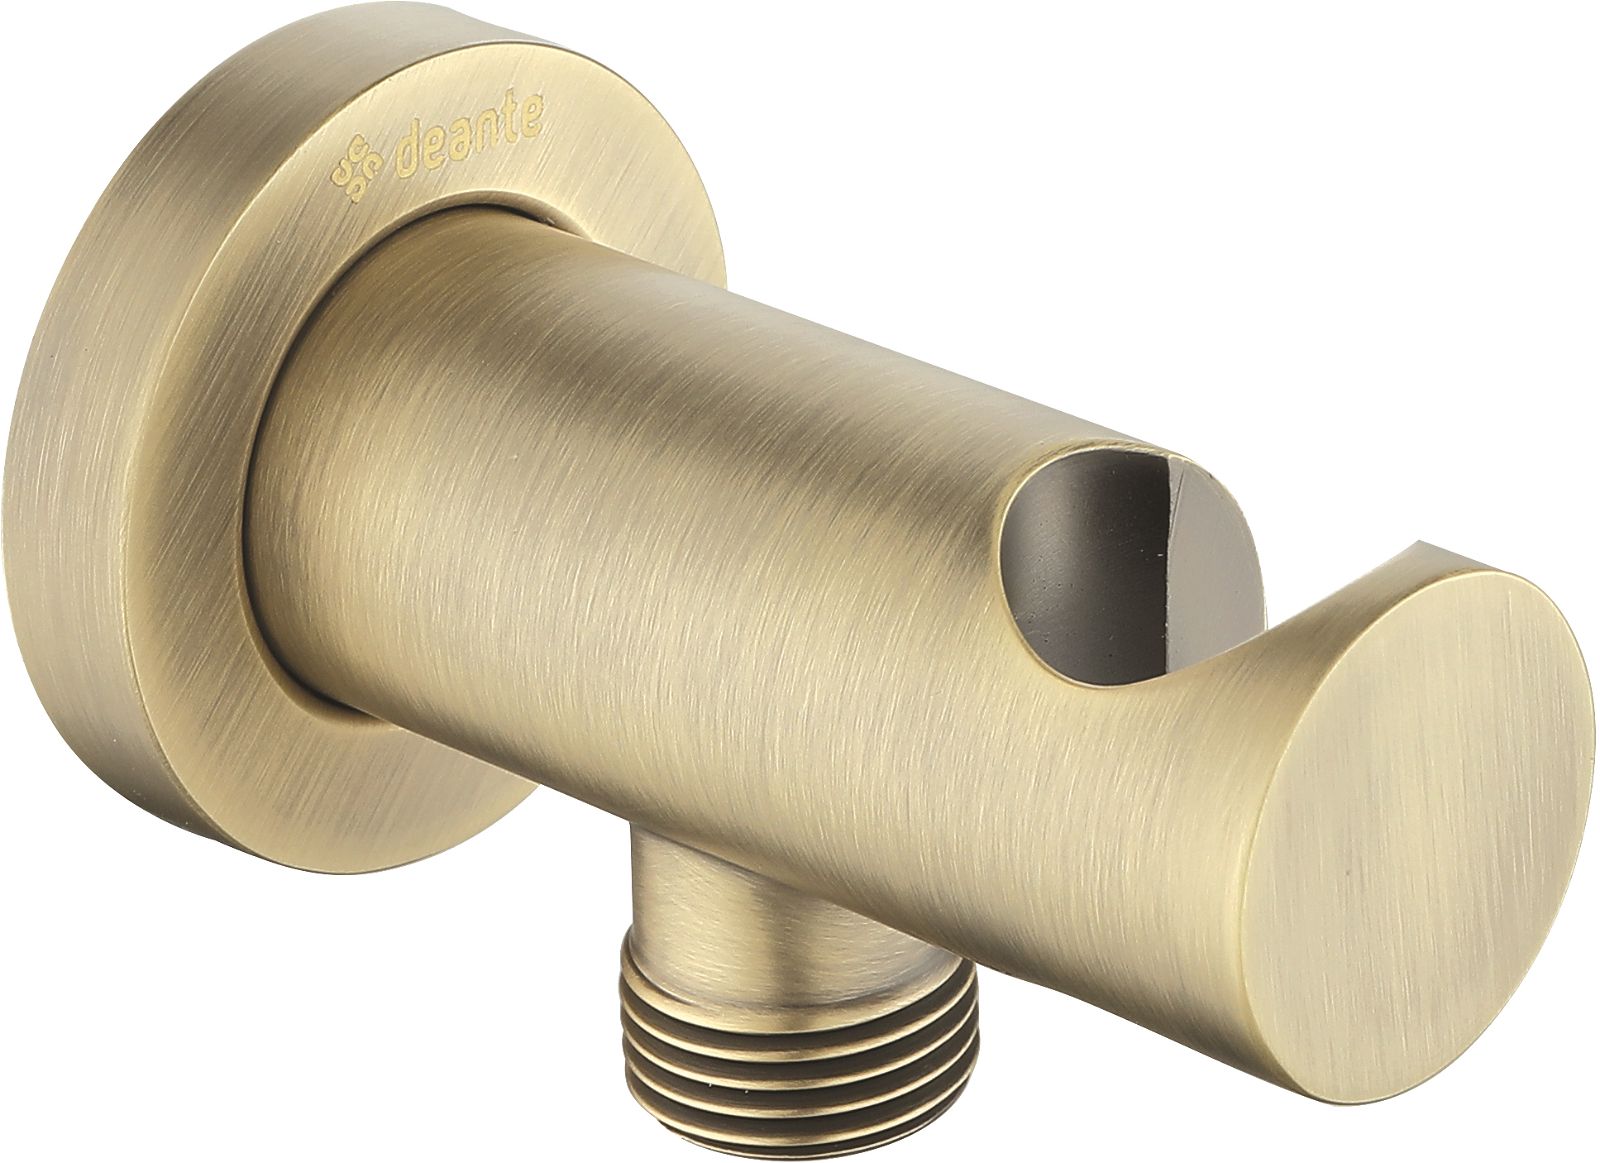 Angled hose connector, round, with hand shower holder - NAC_M51K - Główne zdjęcie produktowe